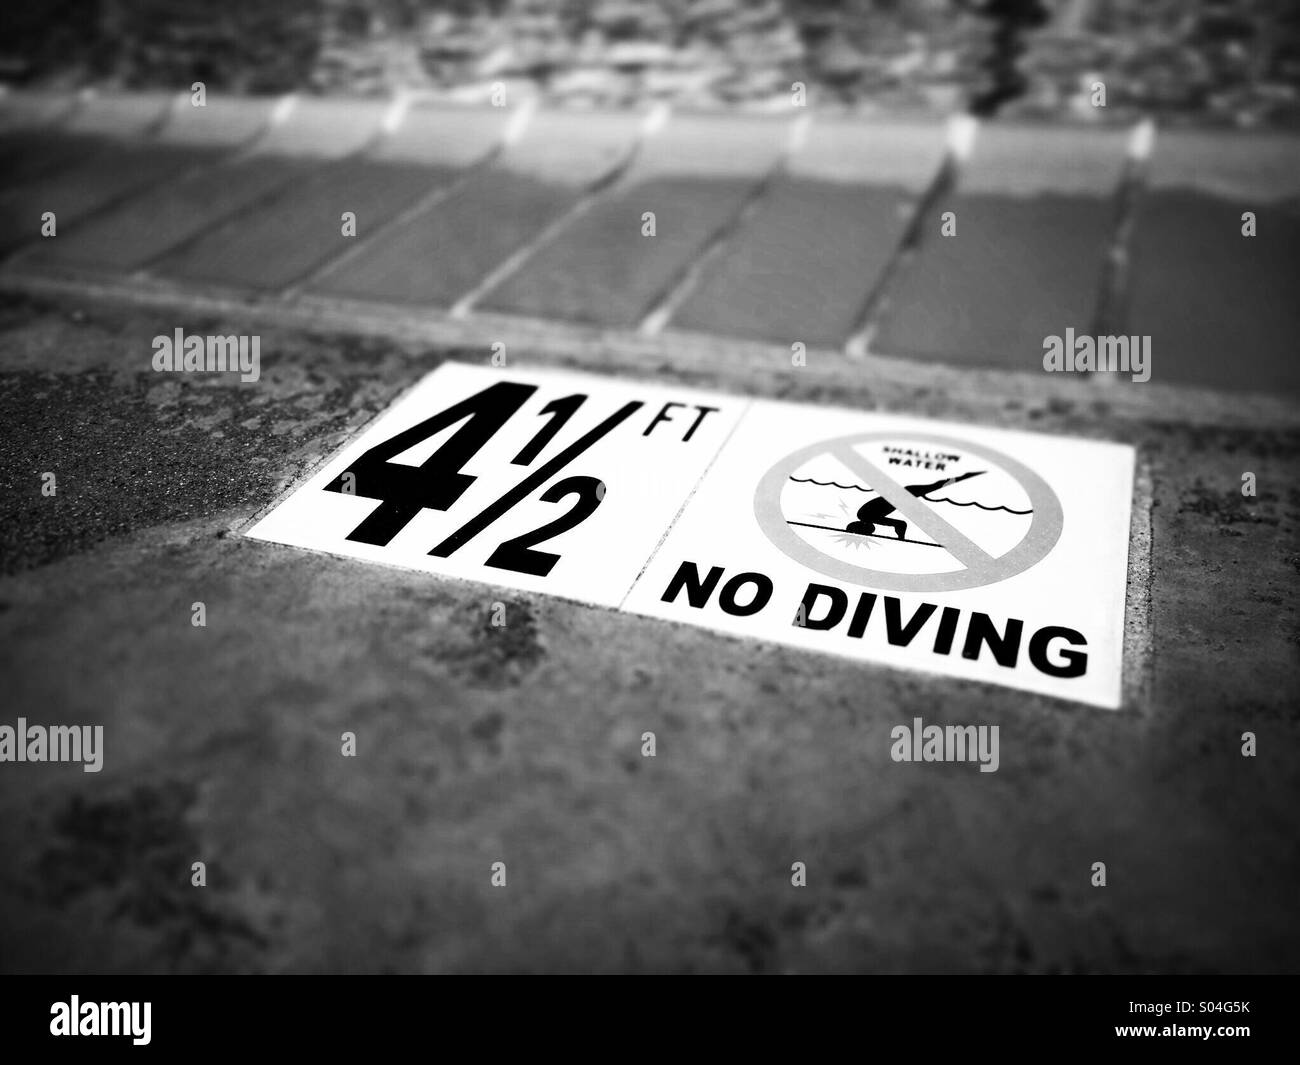 Aucun signe de plongée à une piscine communautaire Banque D'Images